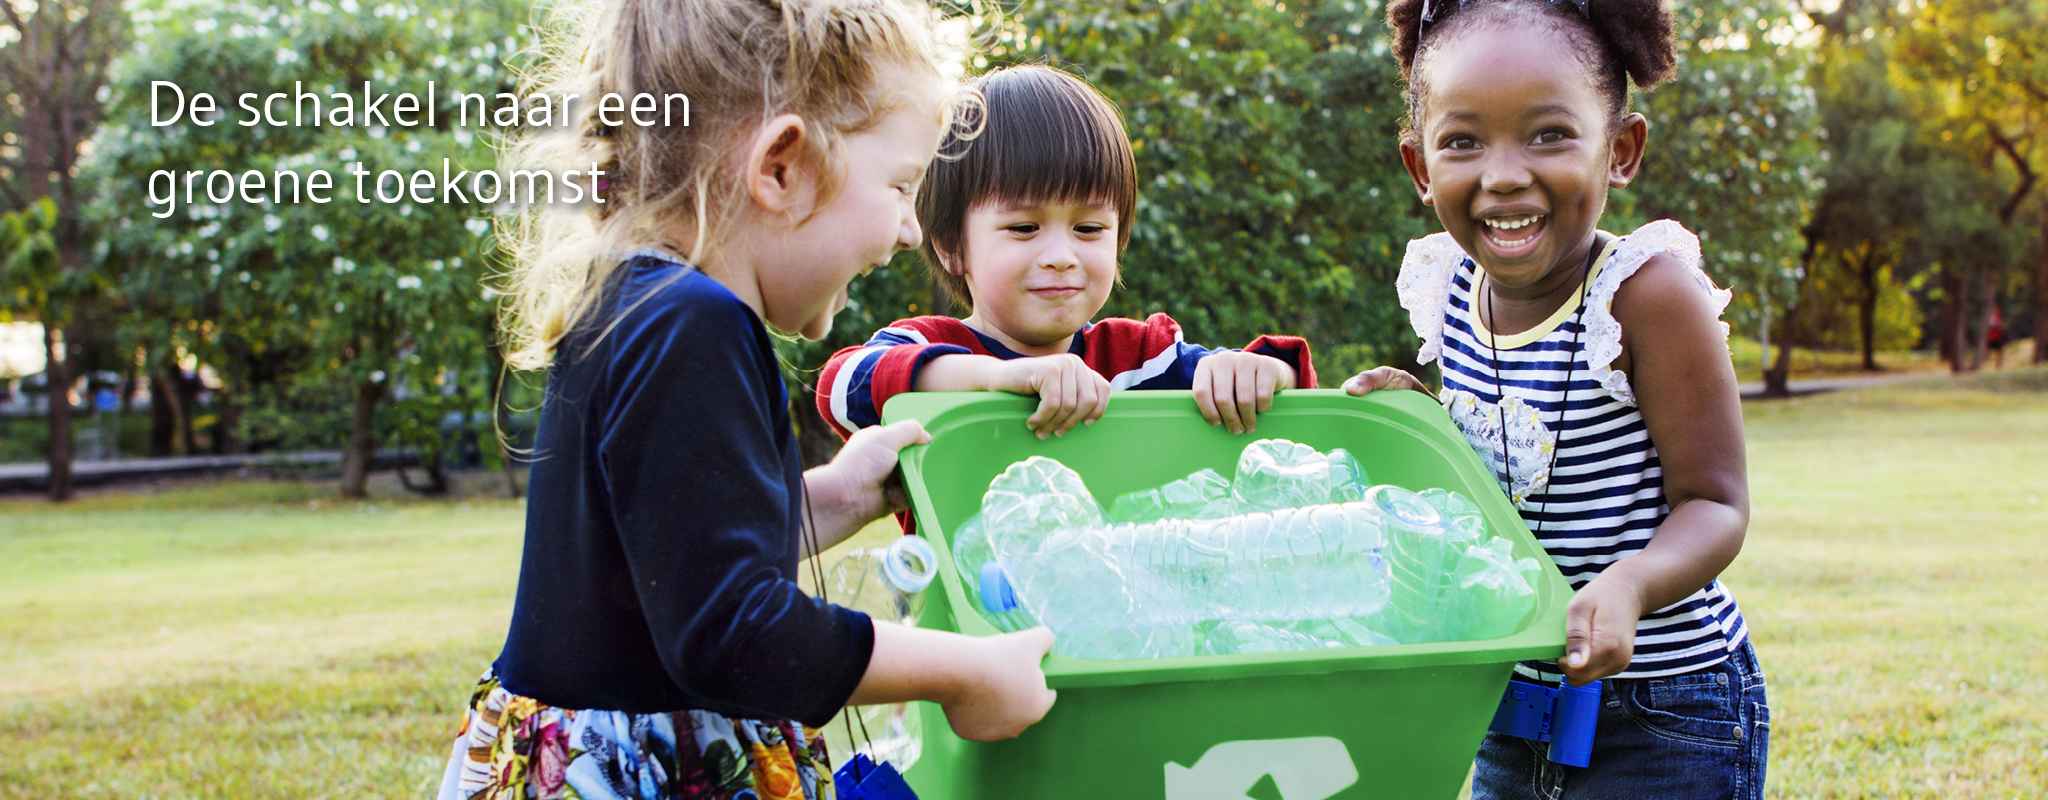 lachende kinderen recycleren plastiek flessen voor een duurzame  toekomst